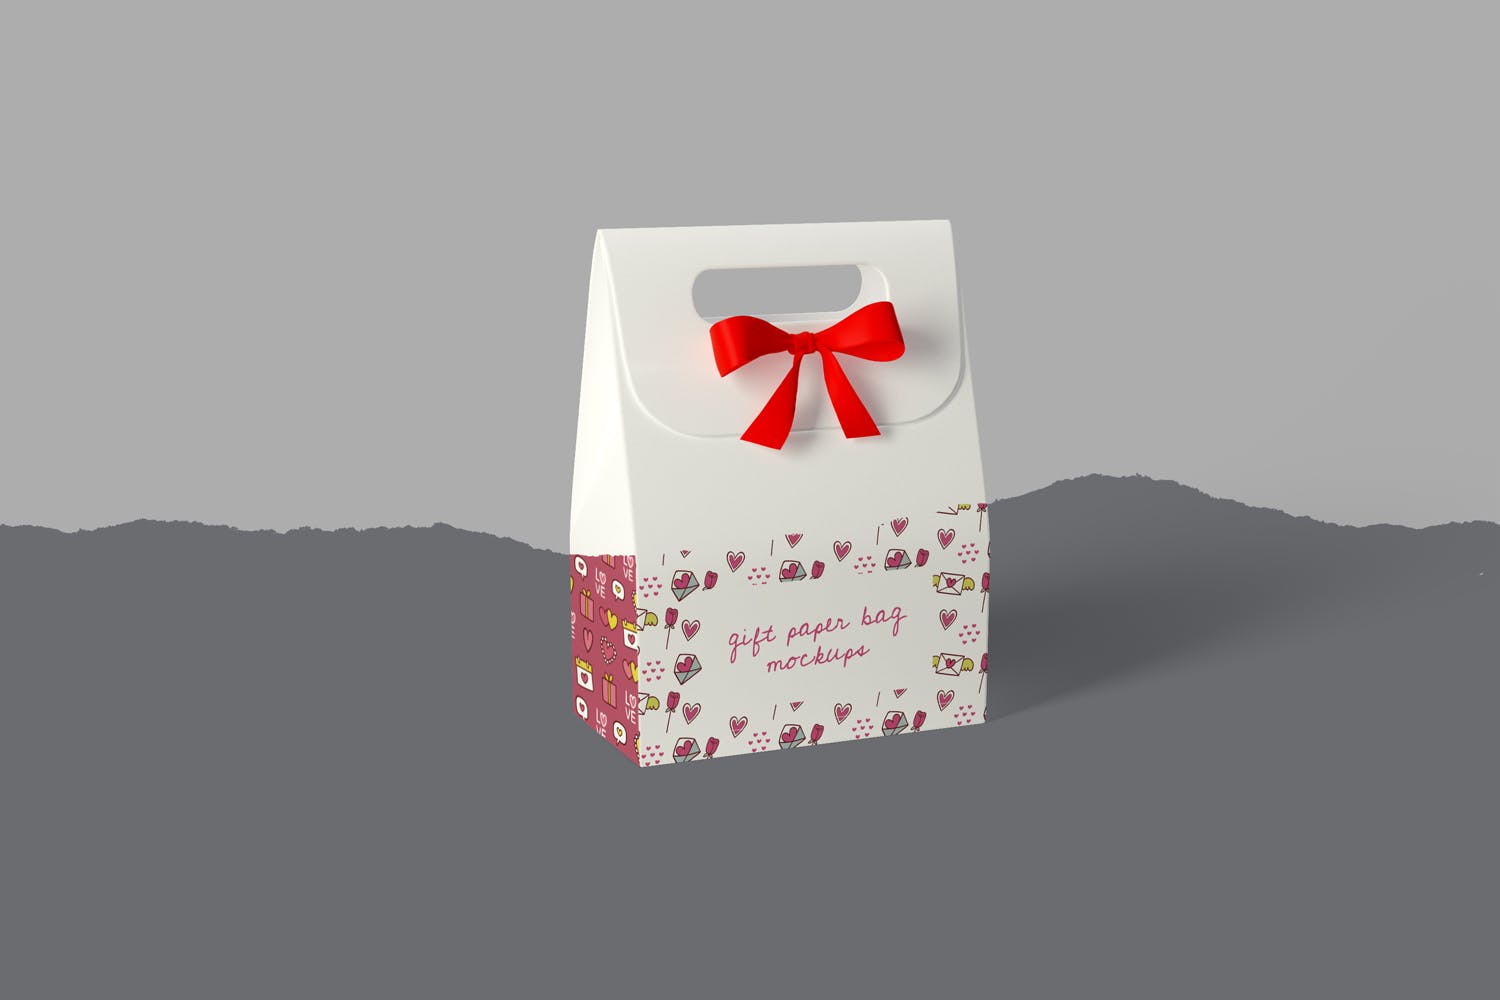 礼品纸袋外观设计图第一素材精选模板 Gift Paper Bag Mockups插图(3)